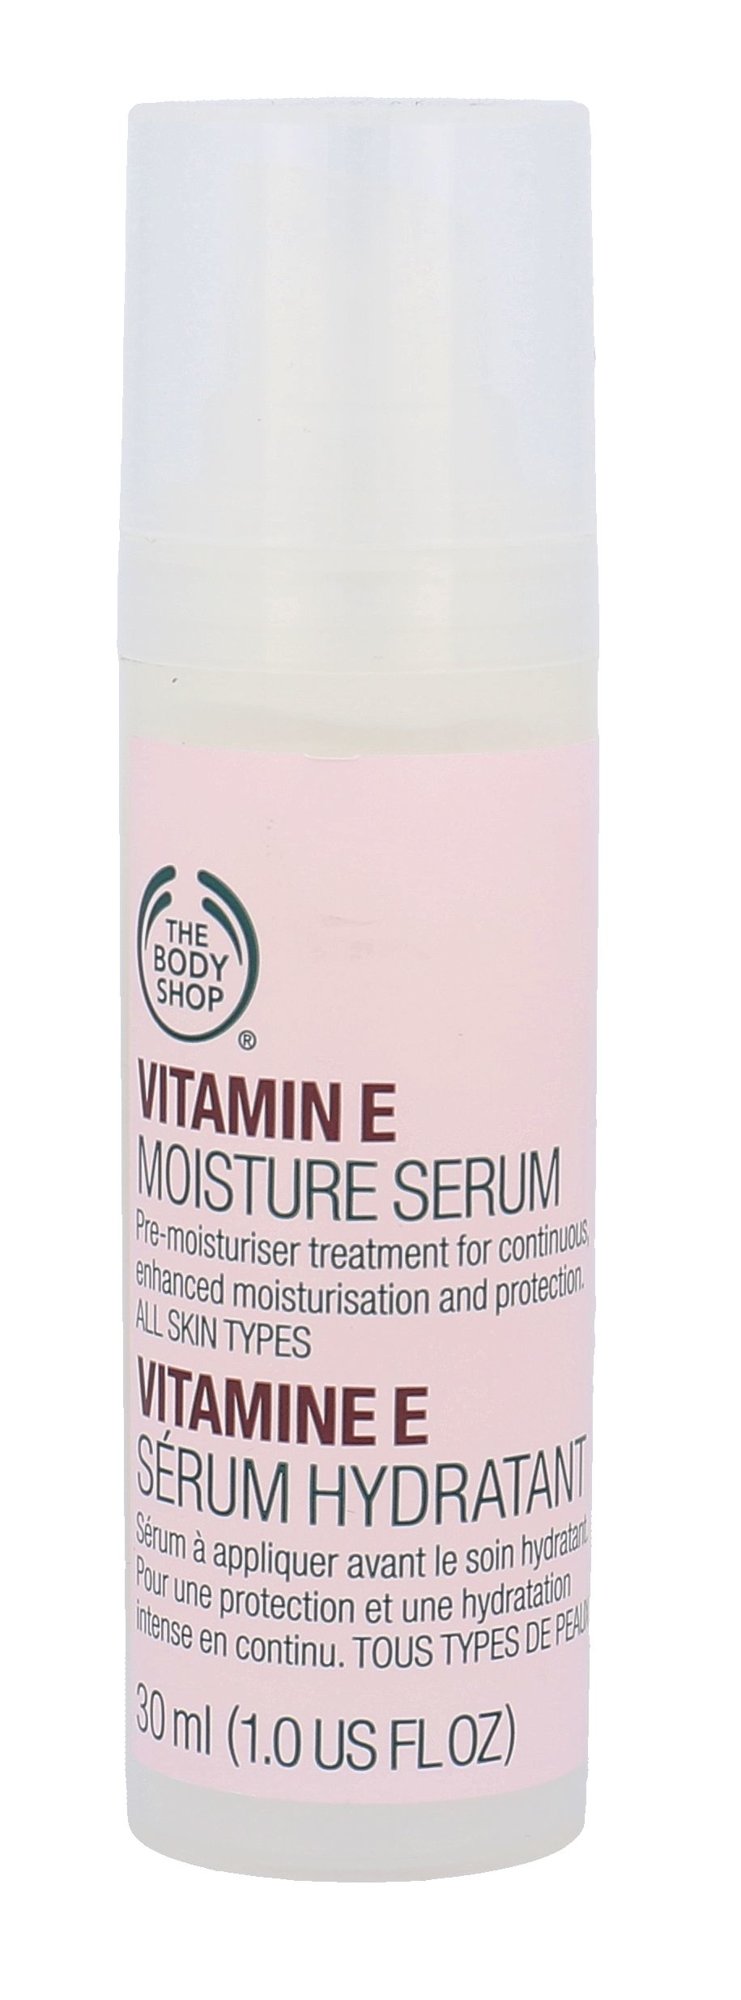 The Body Shop Vitamin E Moisture Serum